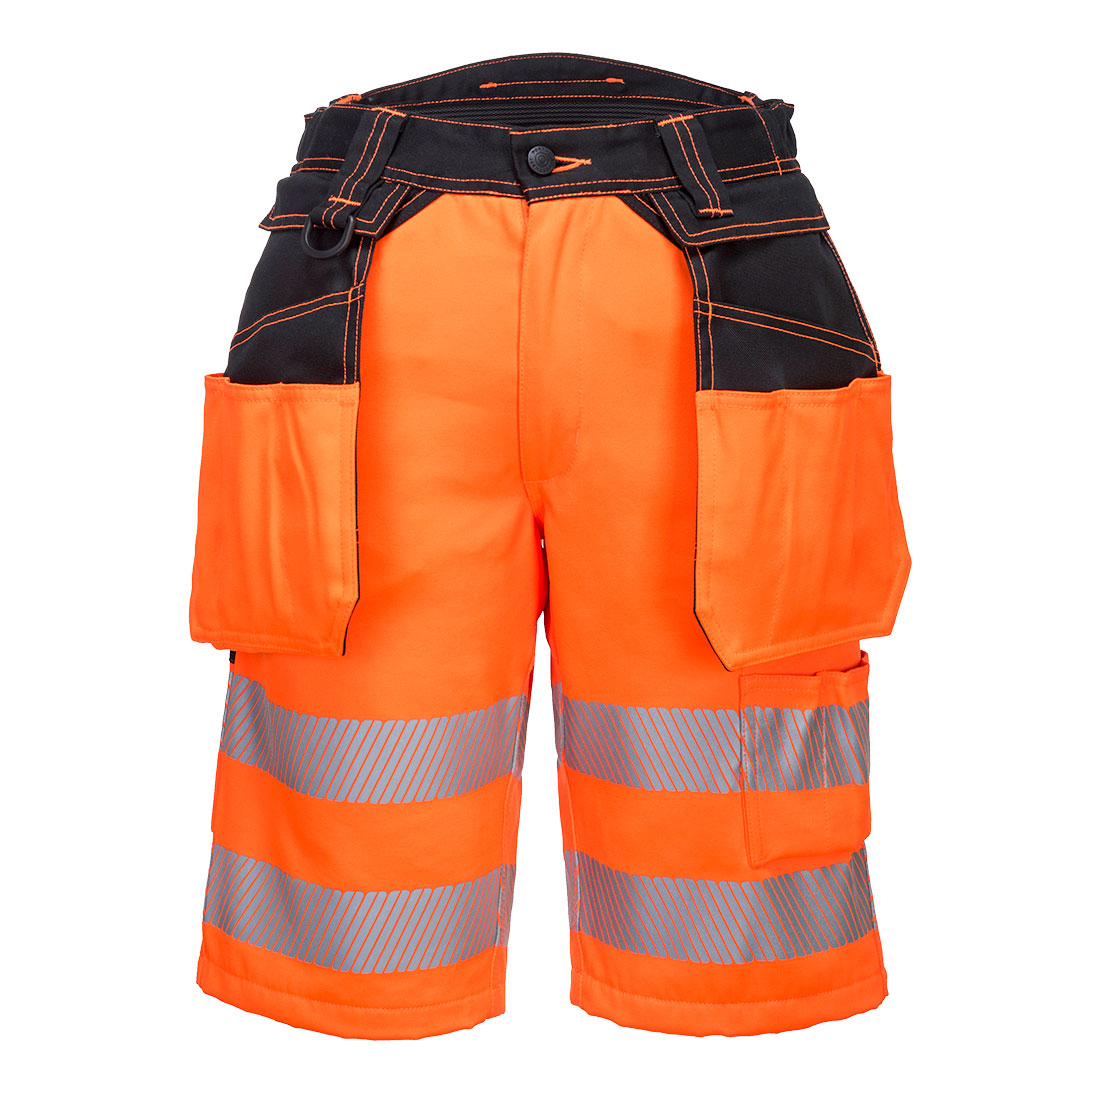 PW3 Hi-Vis Holster Shorts - Orange/Black